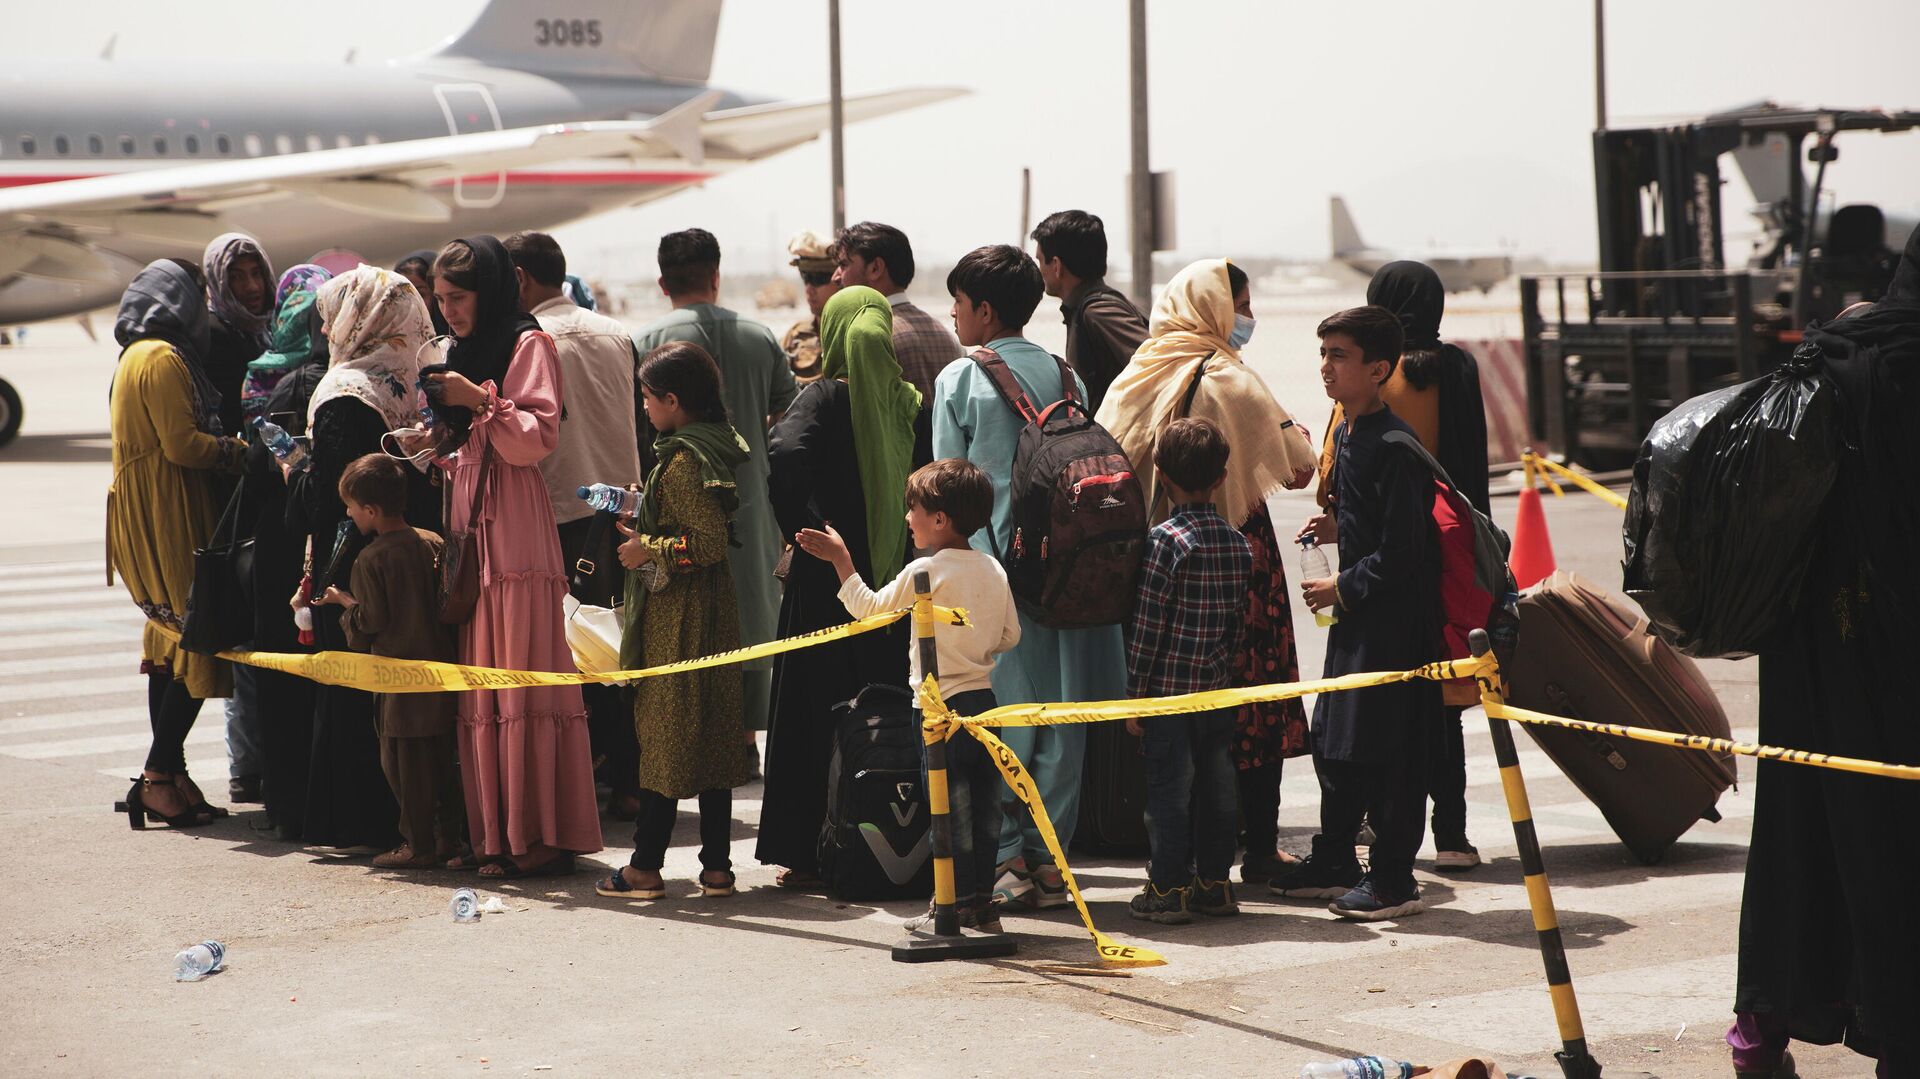 Civiles abordan un avión durante una evacuación en el Aeropuerto Internacional Hamid Karzai, Kabul - Sputnik Mundo, 1920, 20.08.2021